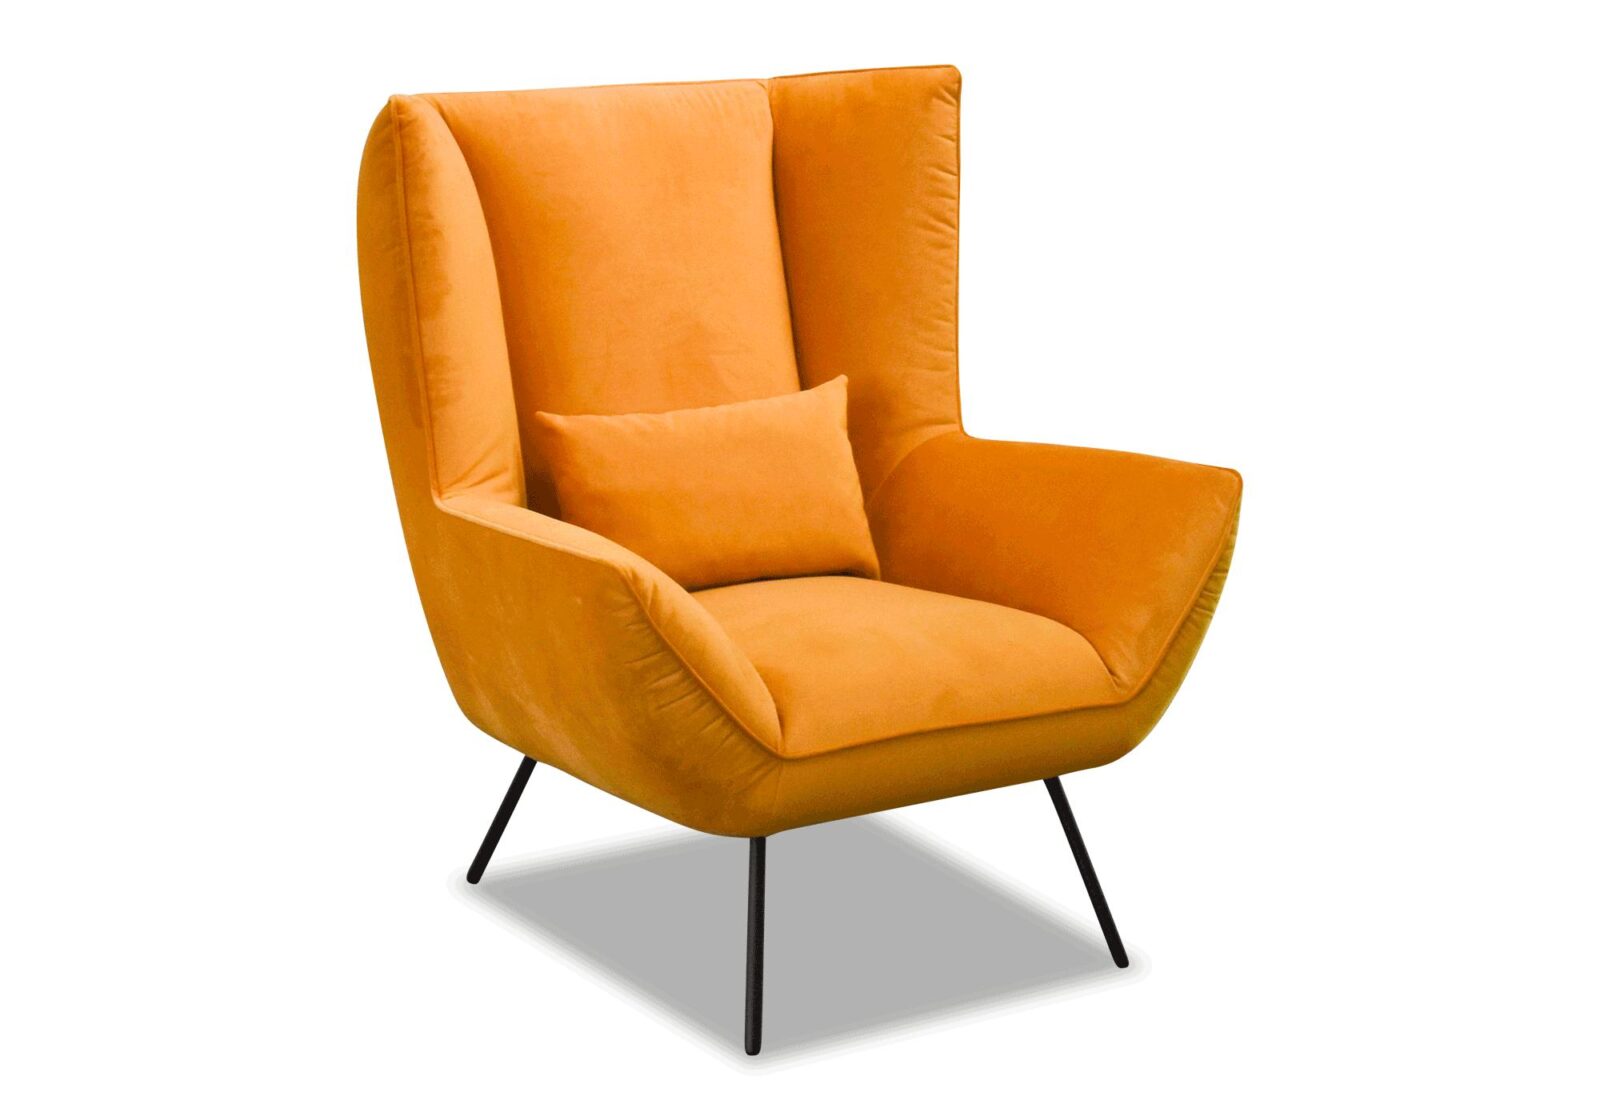 Sessel Culture mit Untergestell aus Metall. Bezug: Stoff. Farbe: orange. Erhältlich bei Möbel Gallati.